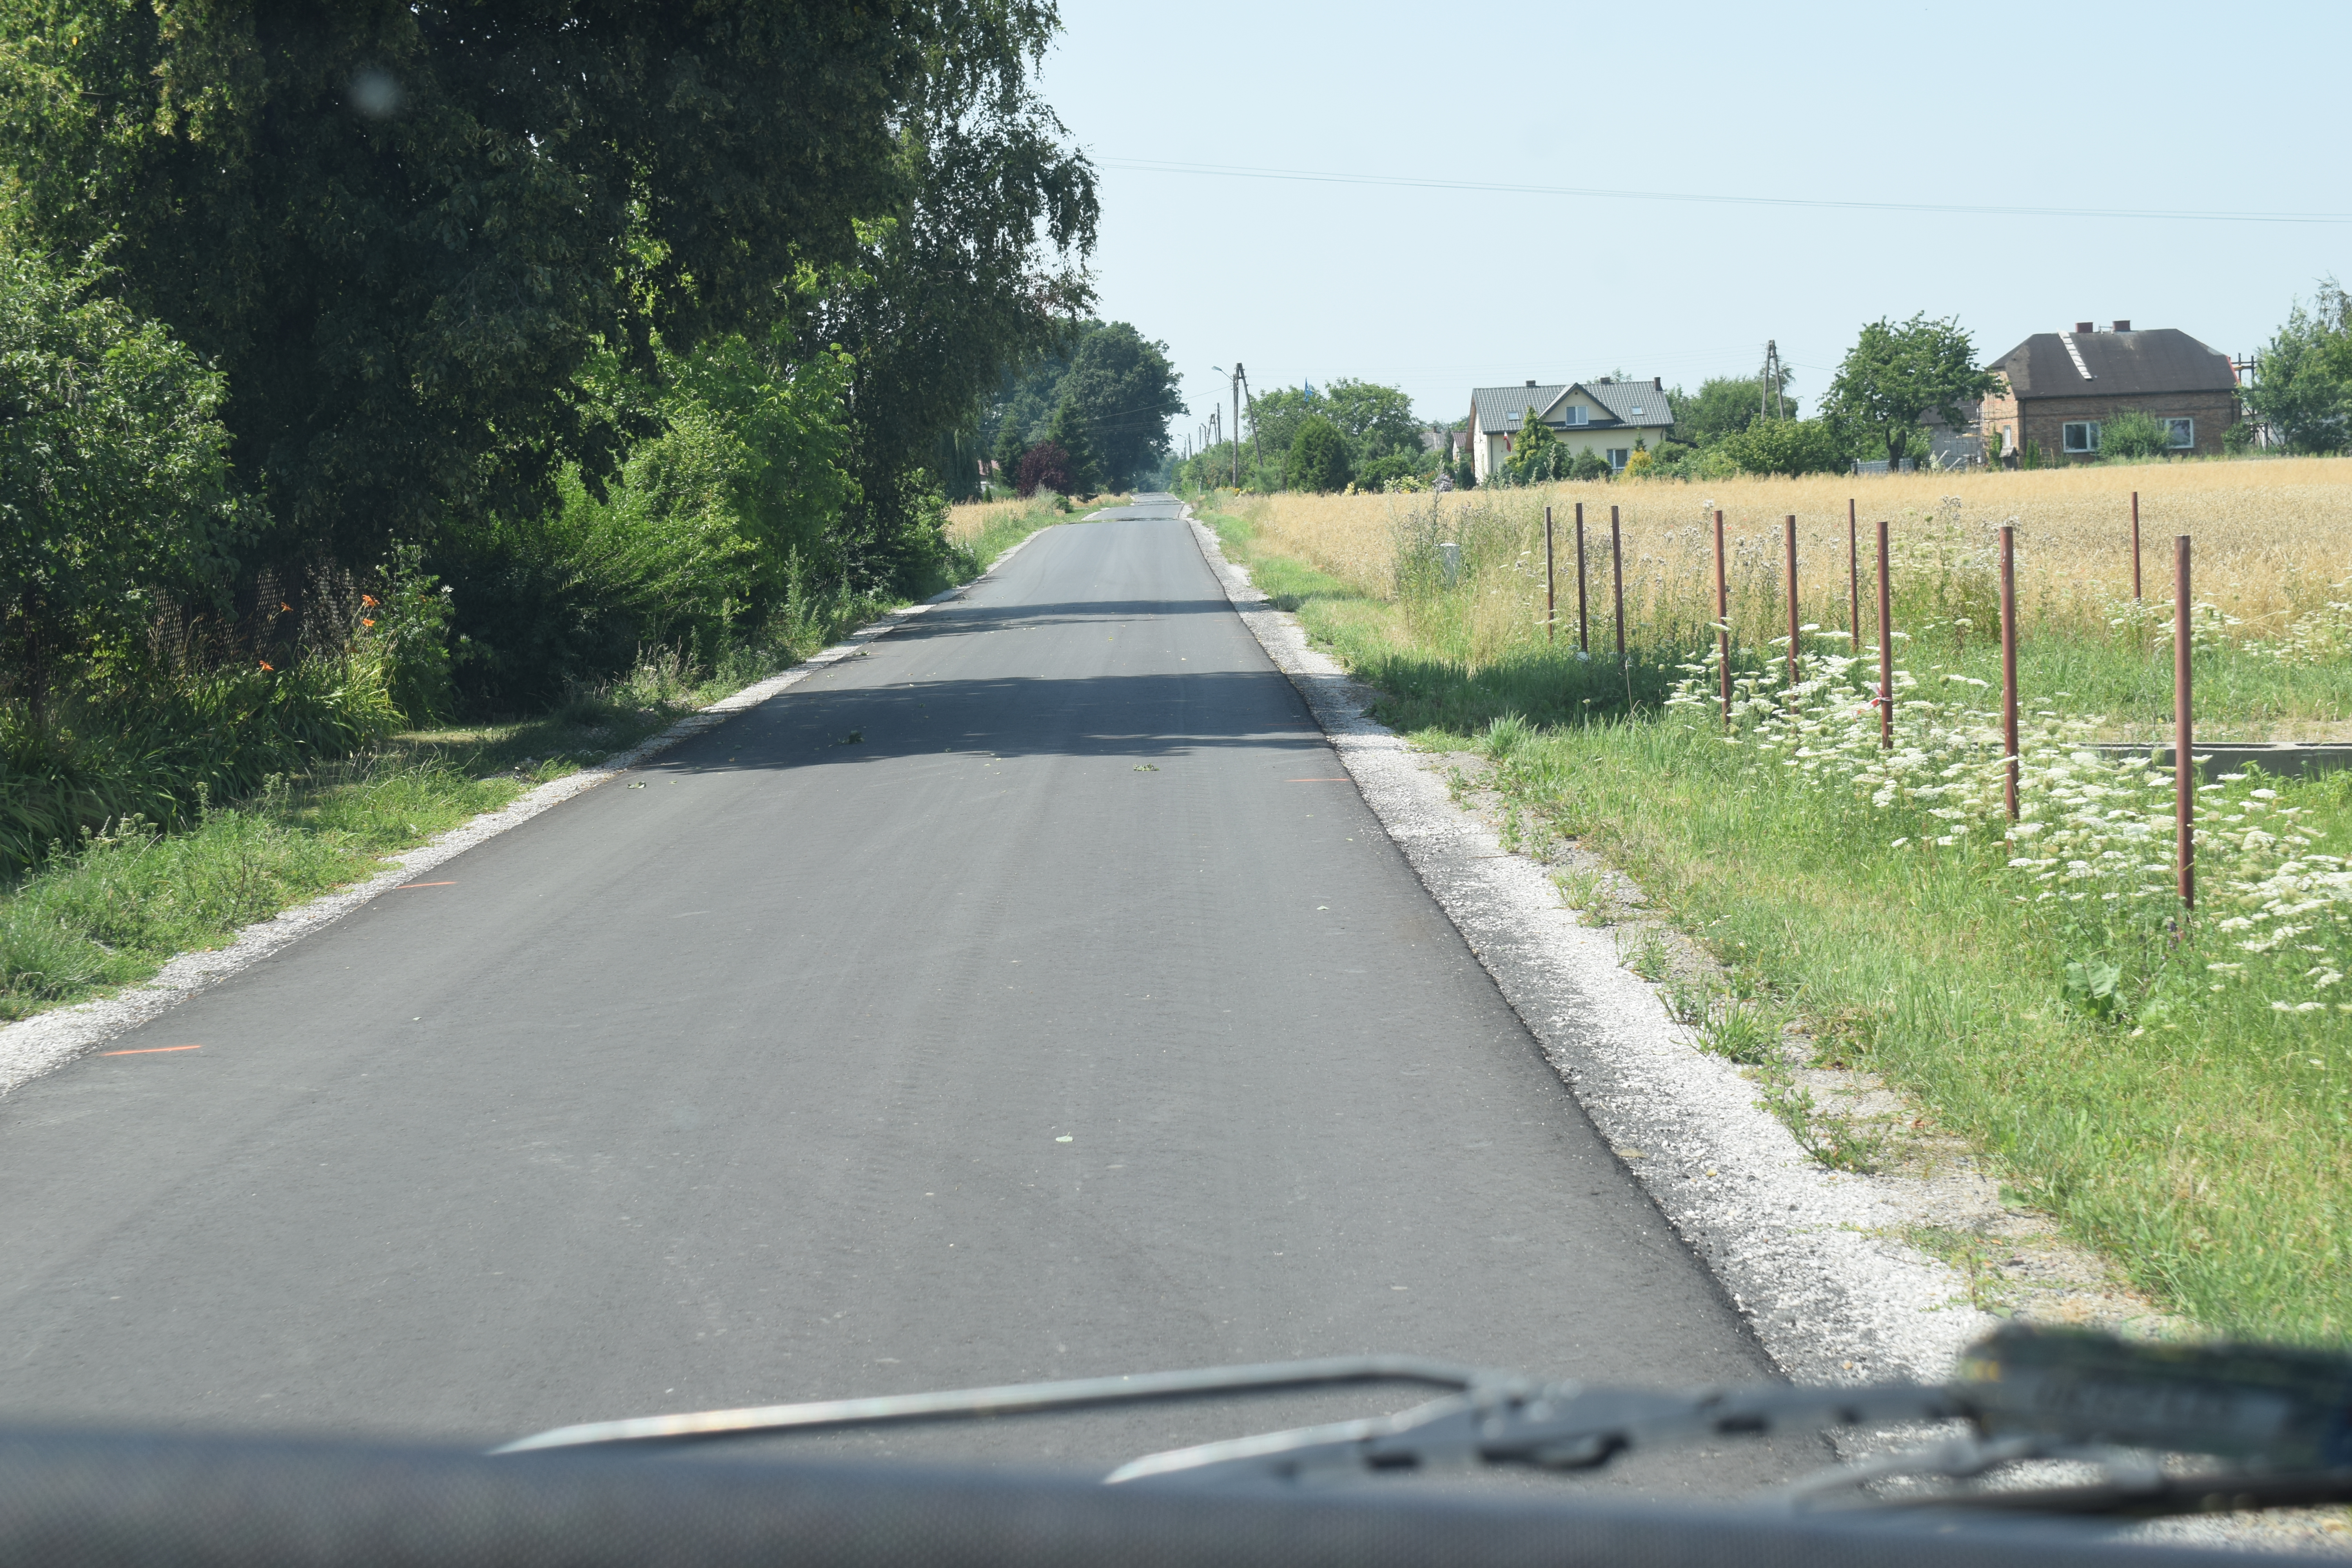 Droga asfaltowa